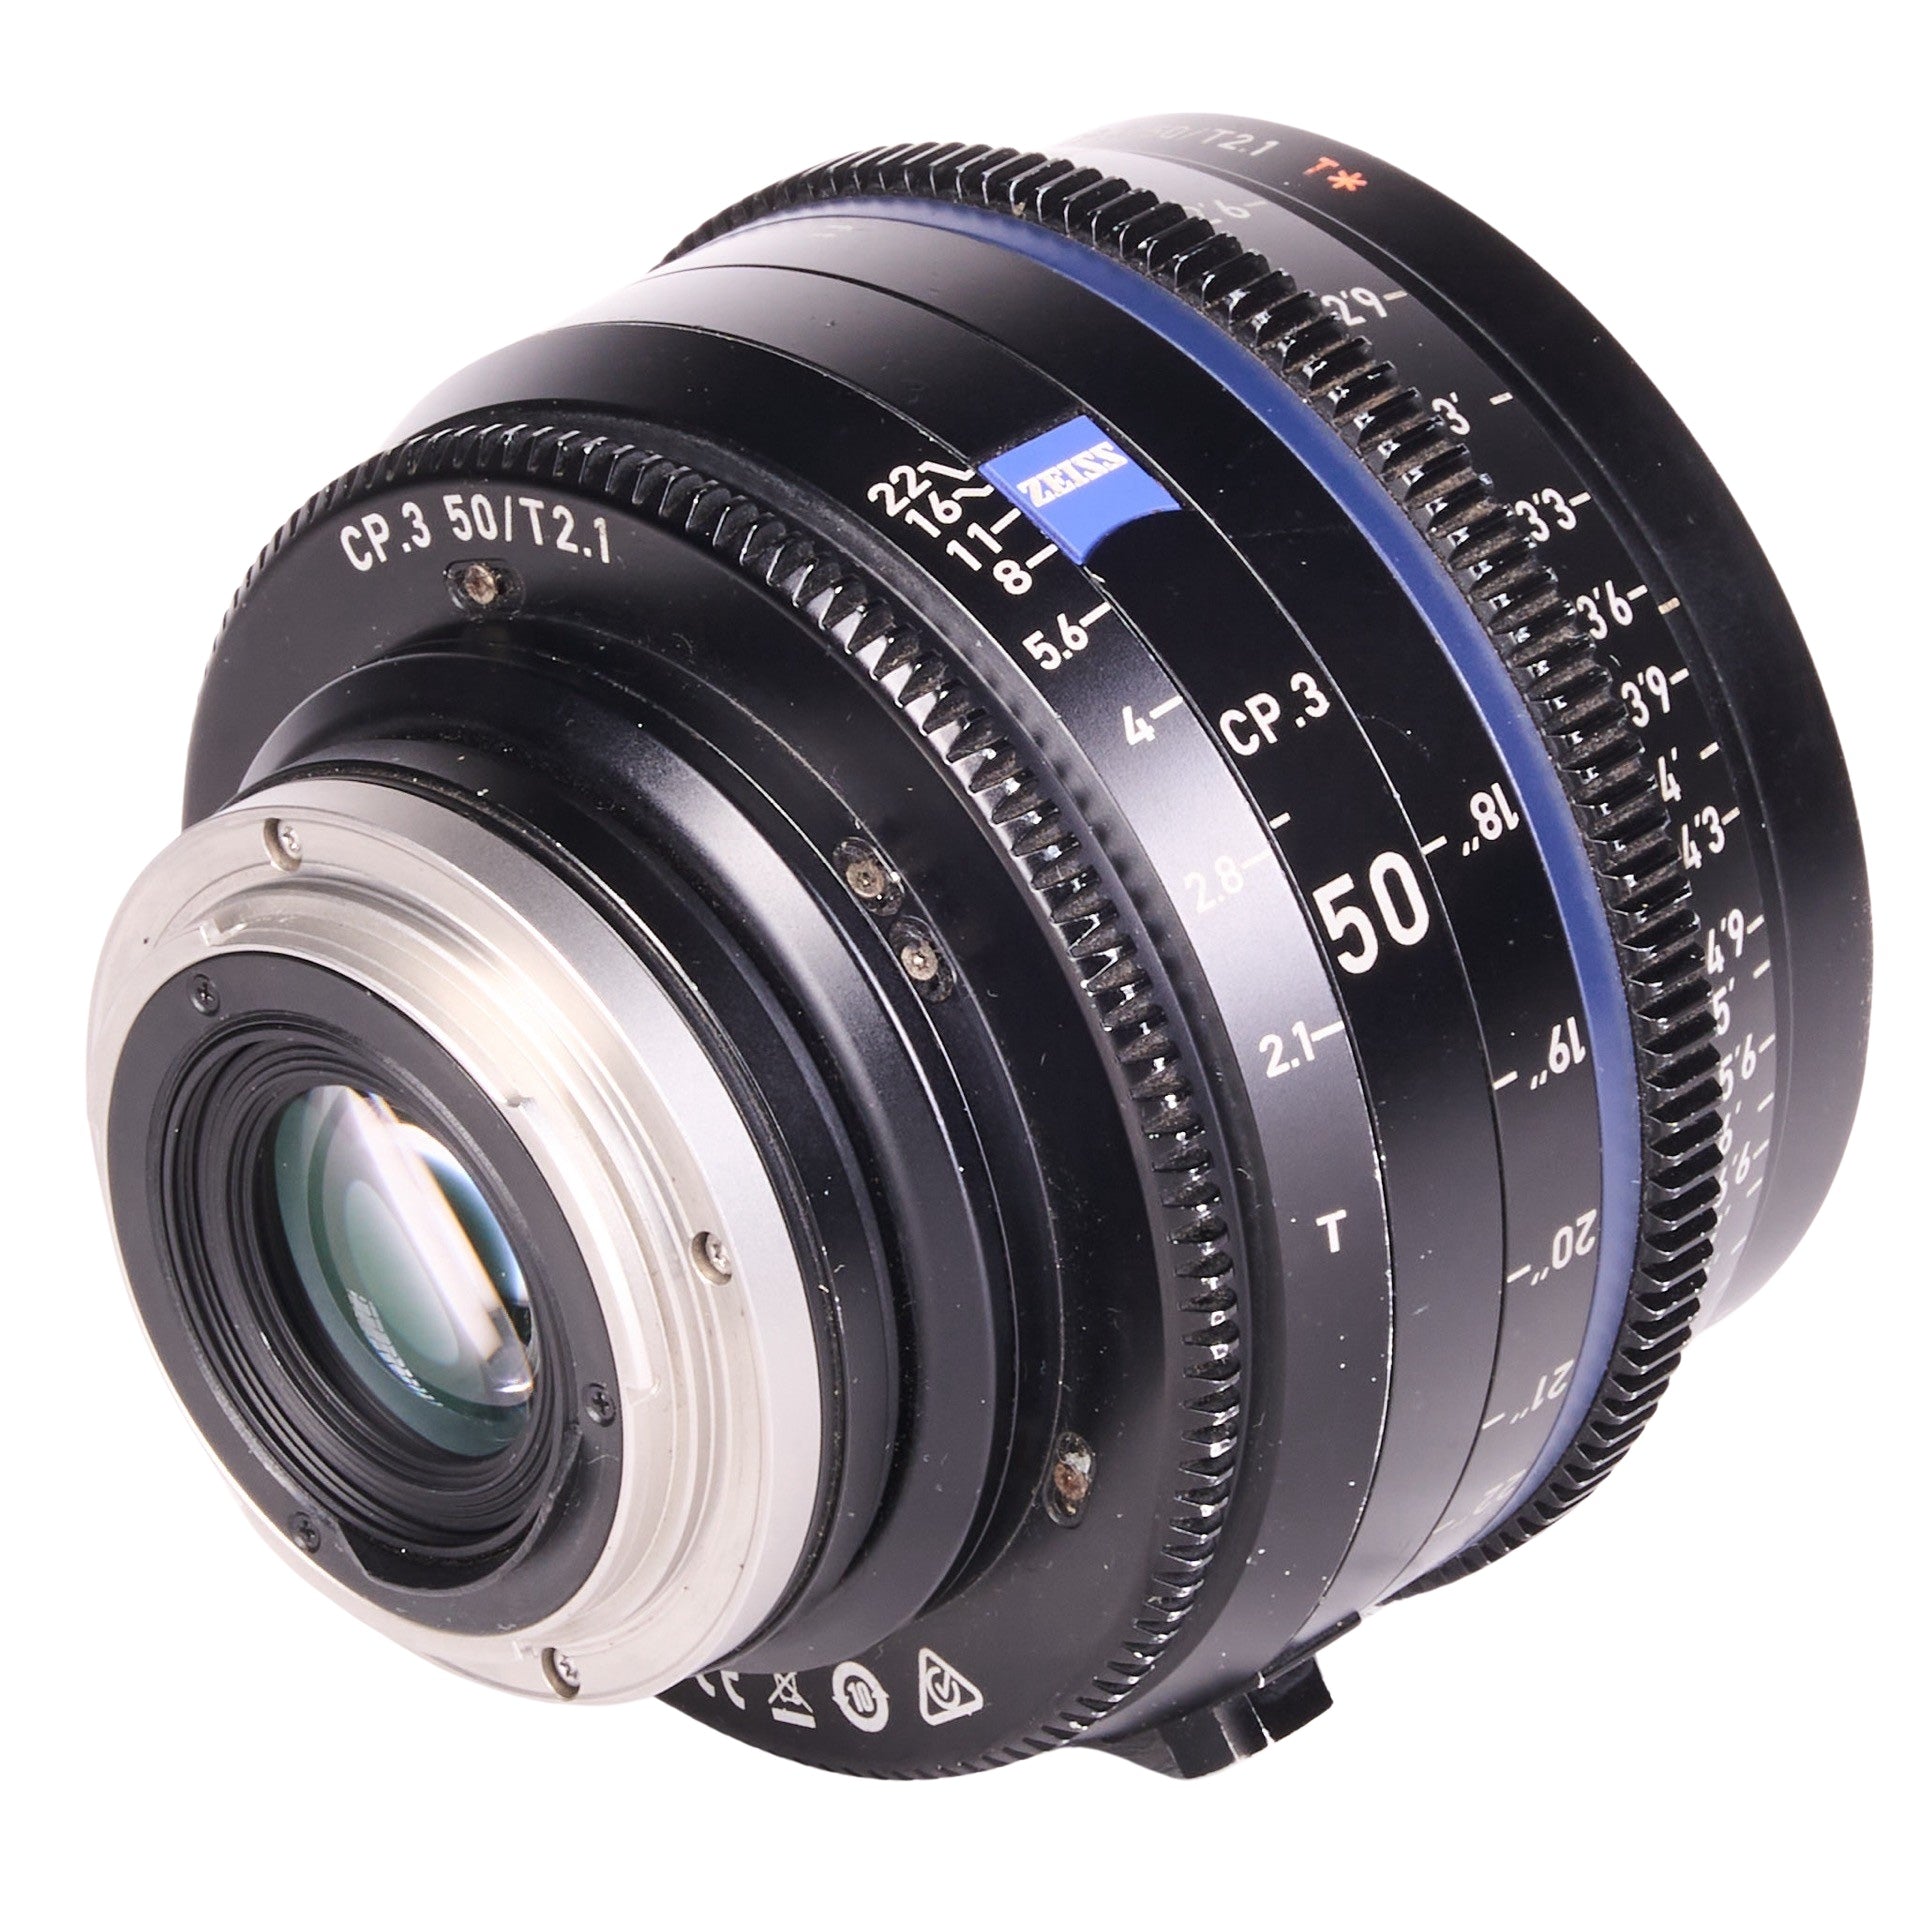 A LENS3550-8901 Zeiss CP.3 Lens Set 15mm 25mm 35mm 50mm 85mm EF Mount_000678.JPG